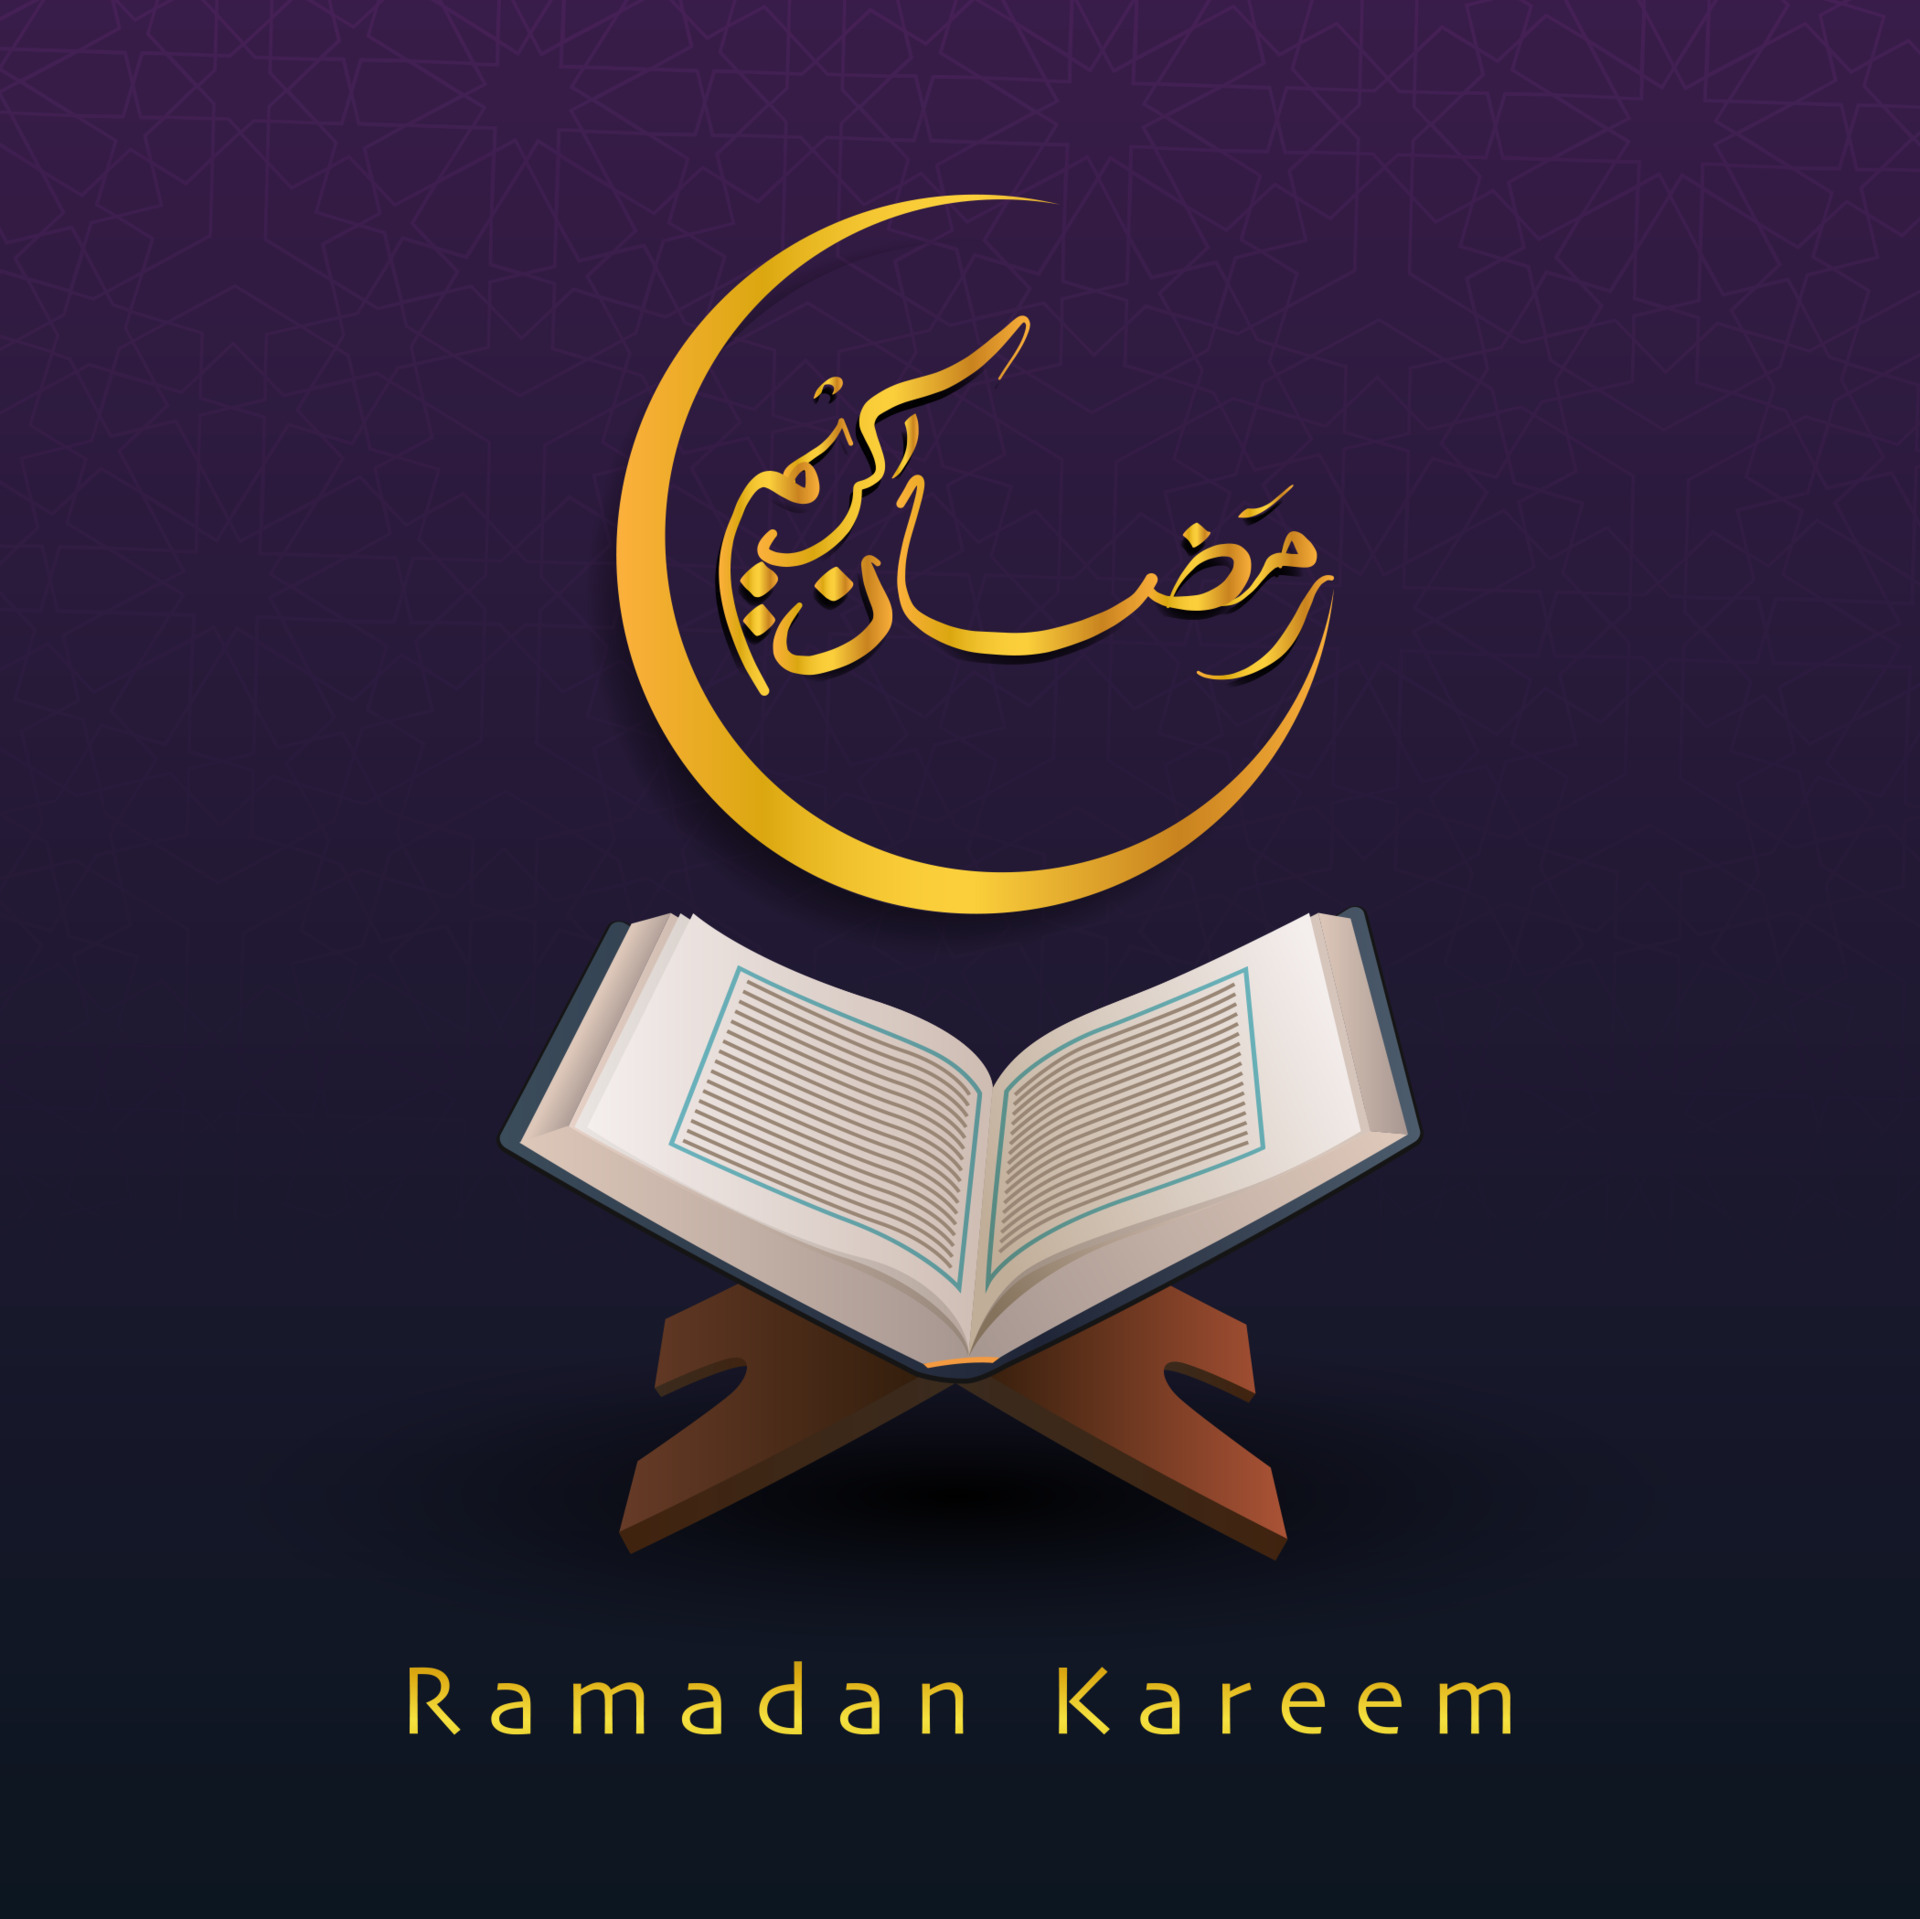 Những bức tranh gọi tên Ramadan Kareem với phong cách viết của chữ Calligraphy là những tác phẩm tuyệt đẹp mà bạn không nên bỏ qua. Hãy cùng tận hưởng và đắm mình trong không gian của thánh kinh Islam.